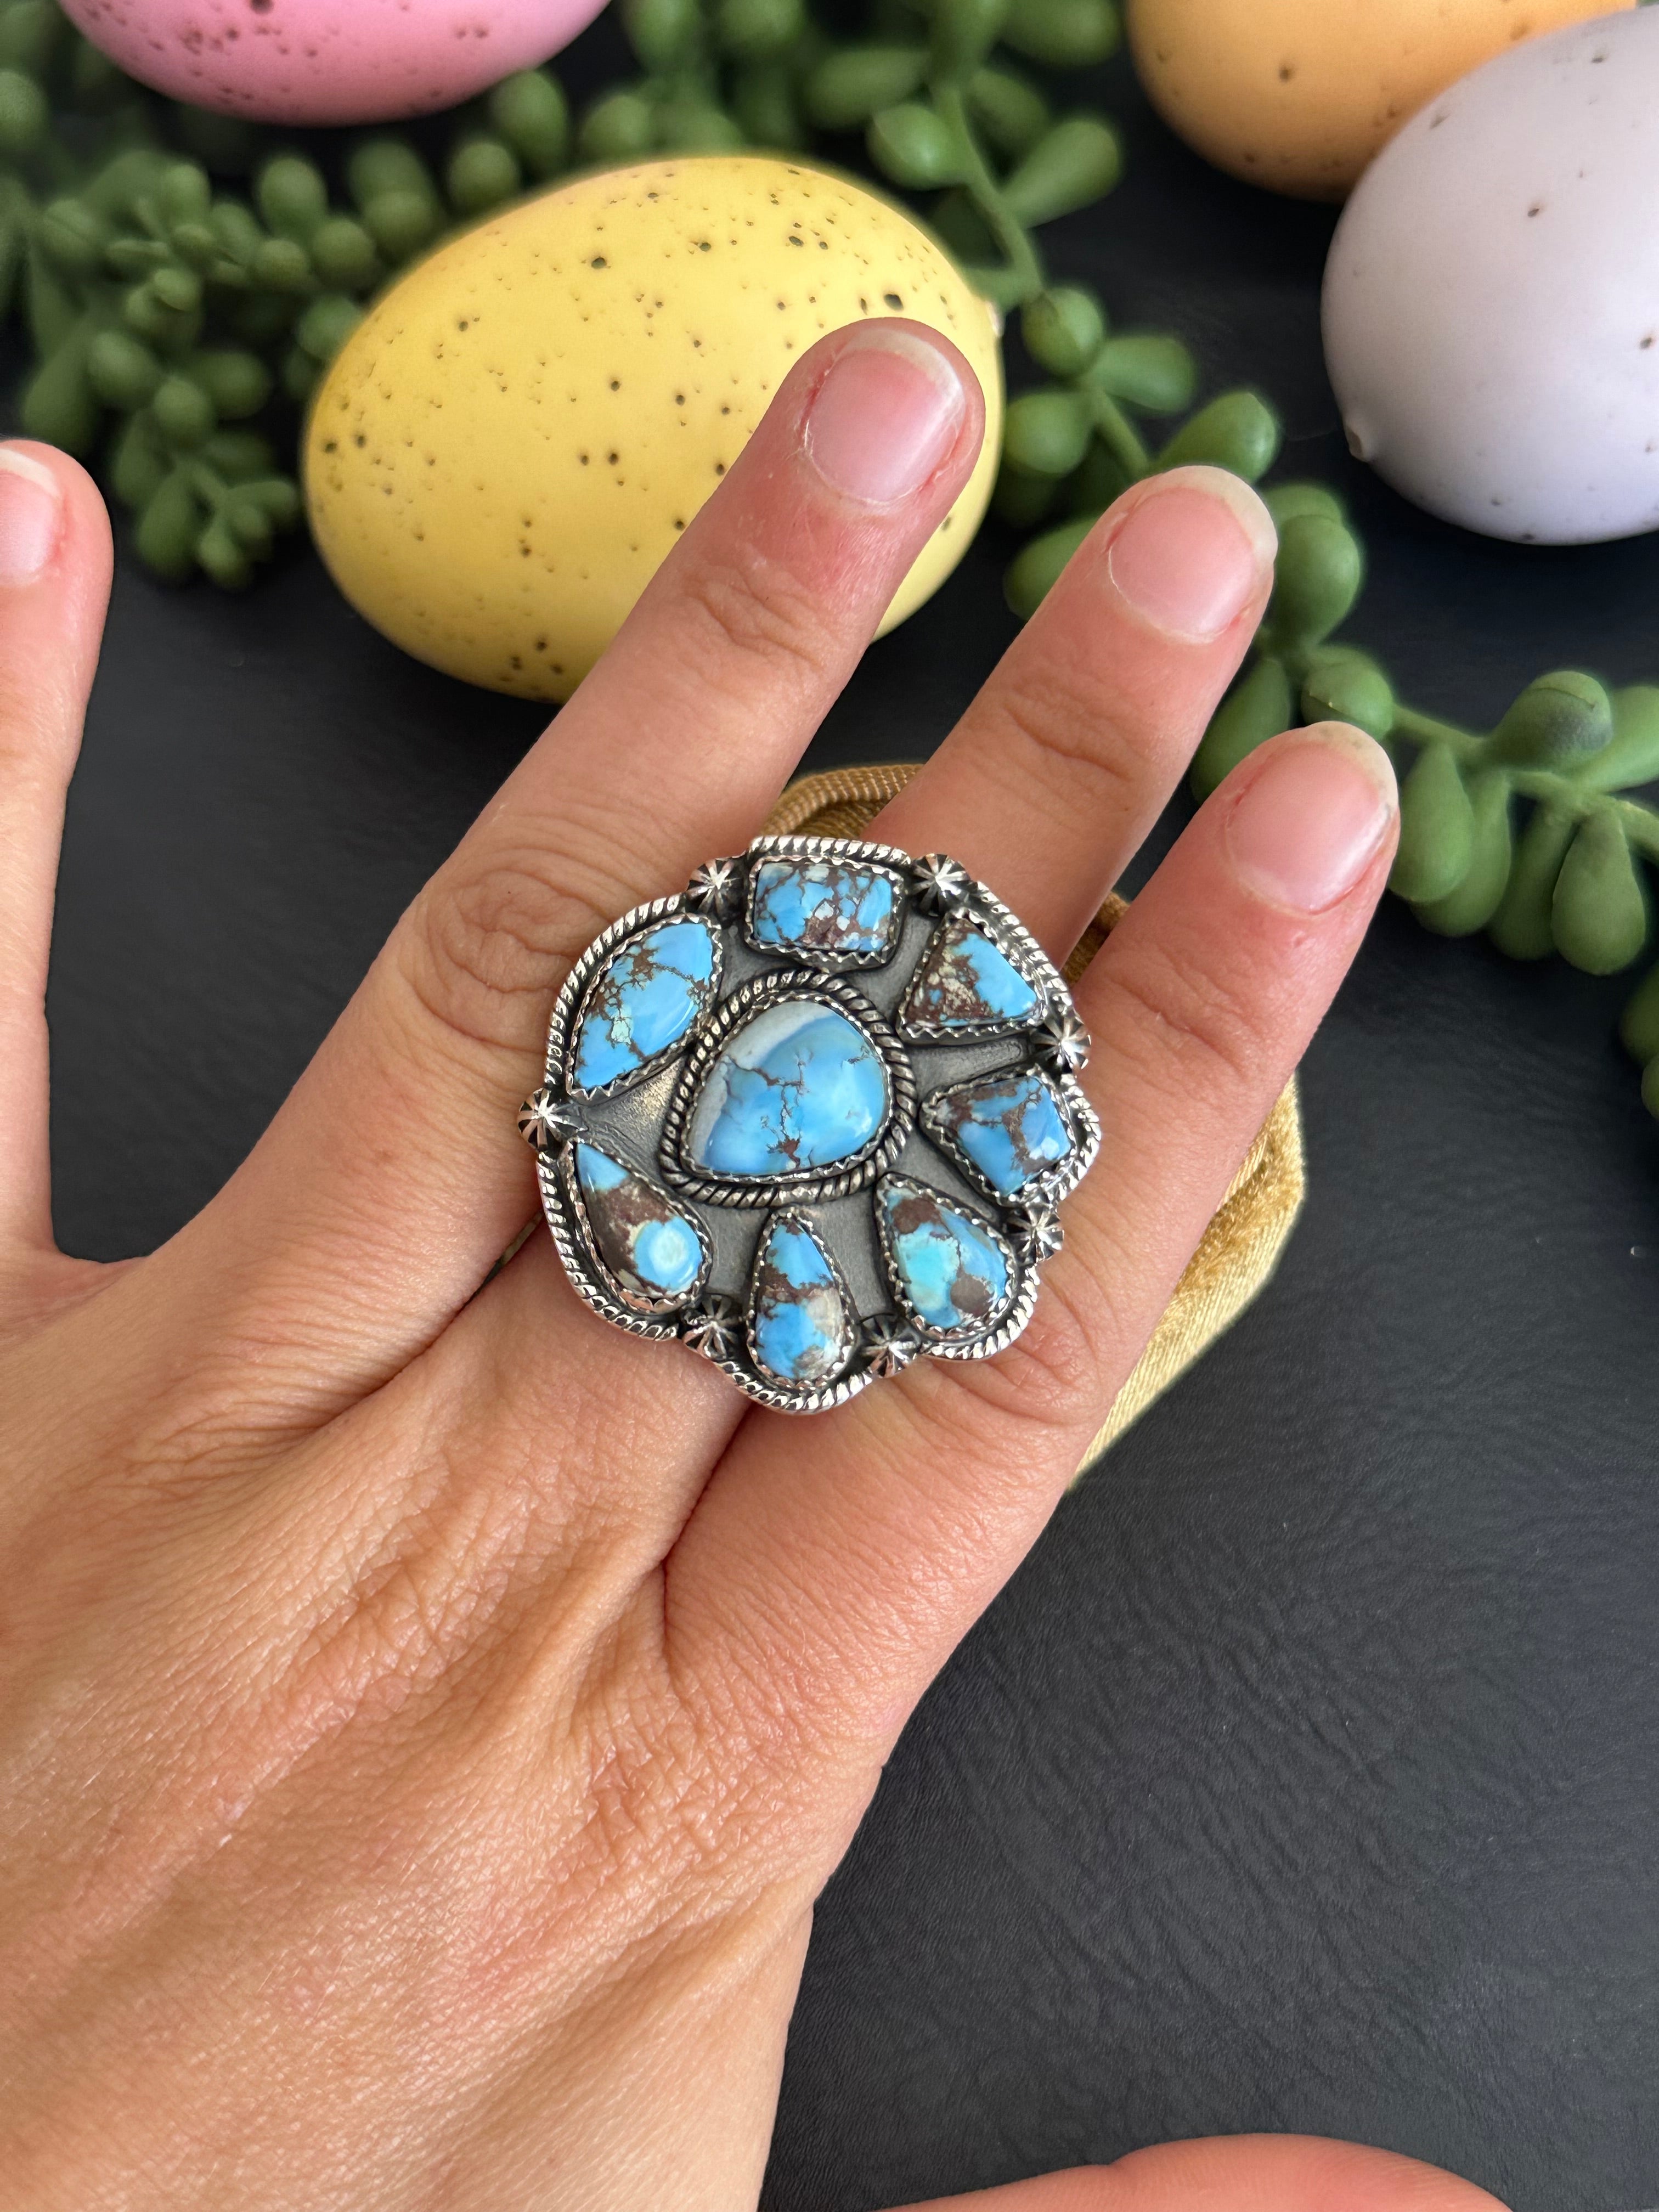 Southwest Handmade Golden Hills Turquoise & Sterling Silver Adjustable Cluster Ring